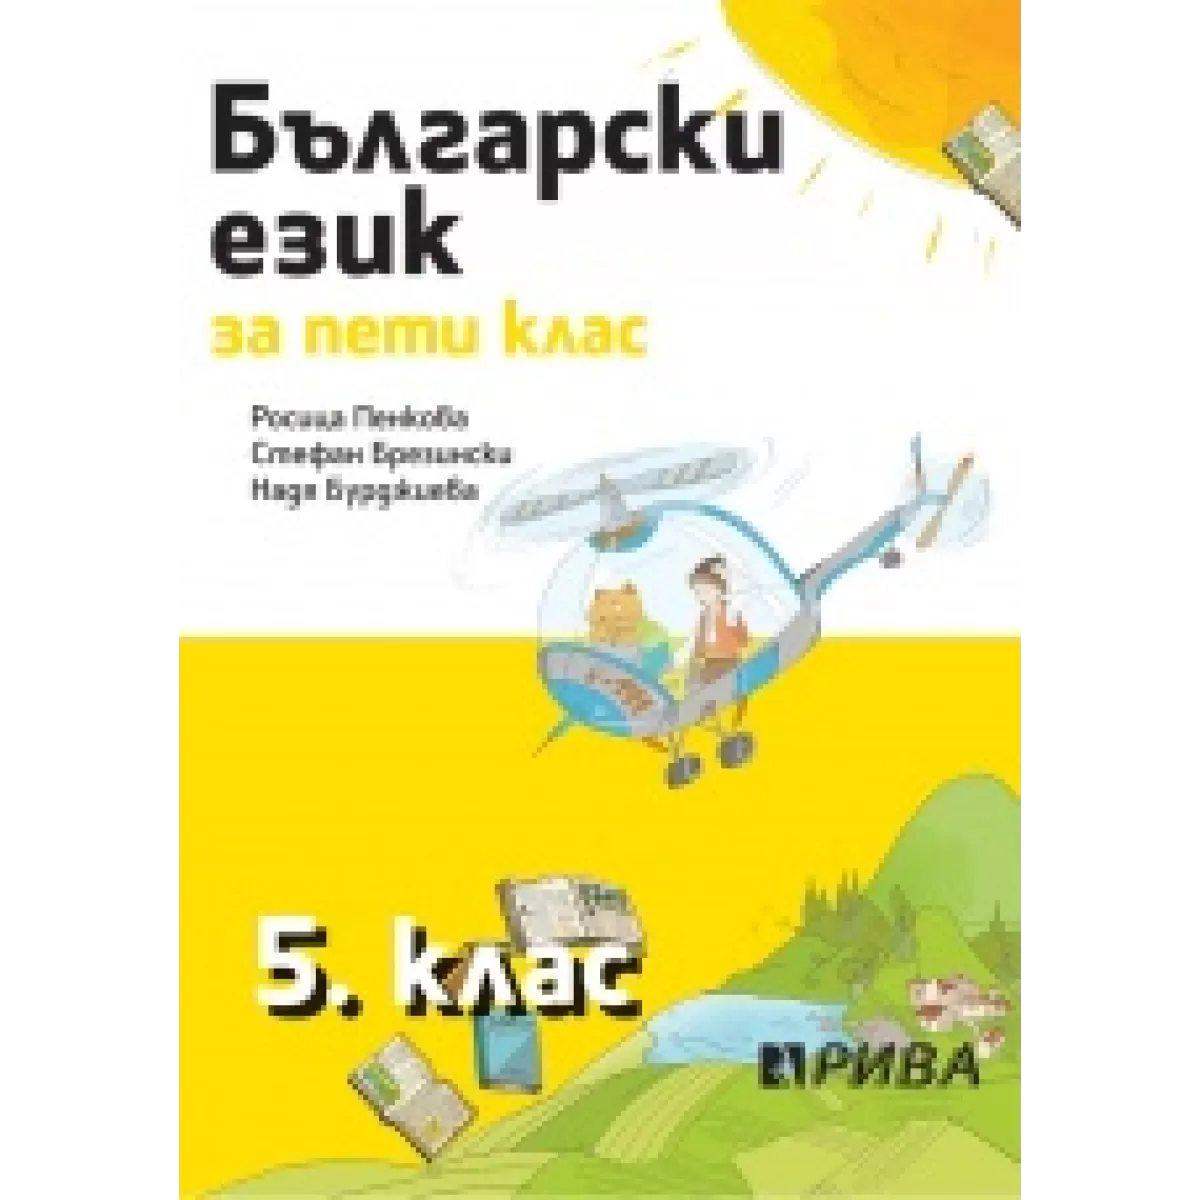 Български език 5. клас